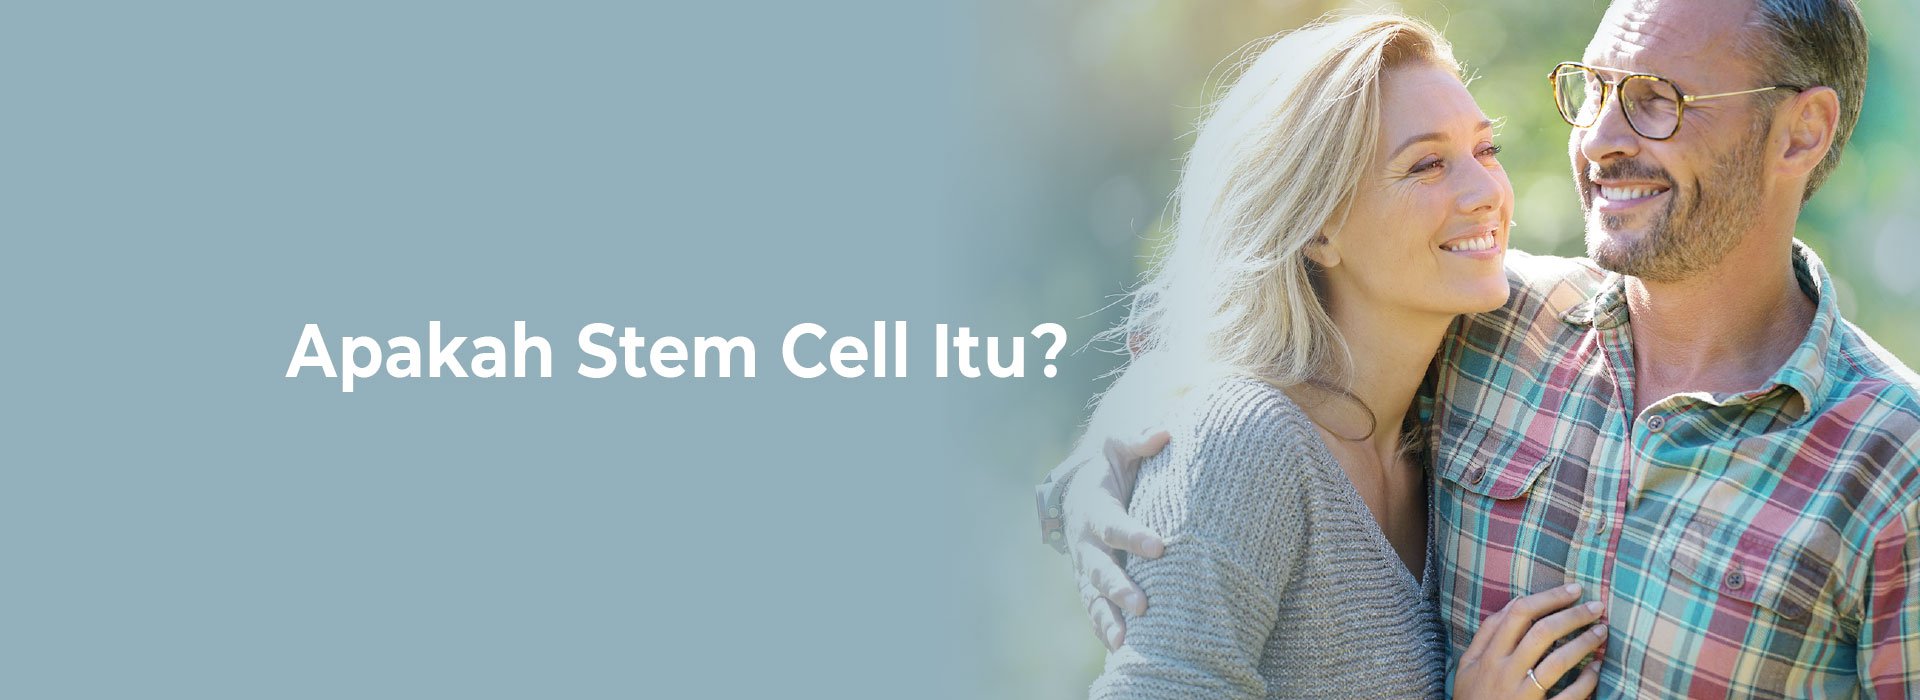 New Image International:Apakah Stem Cell Itu?